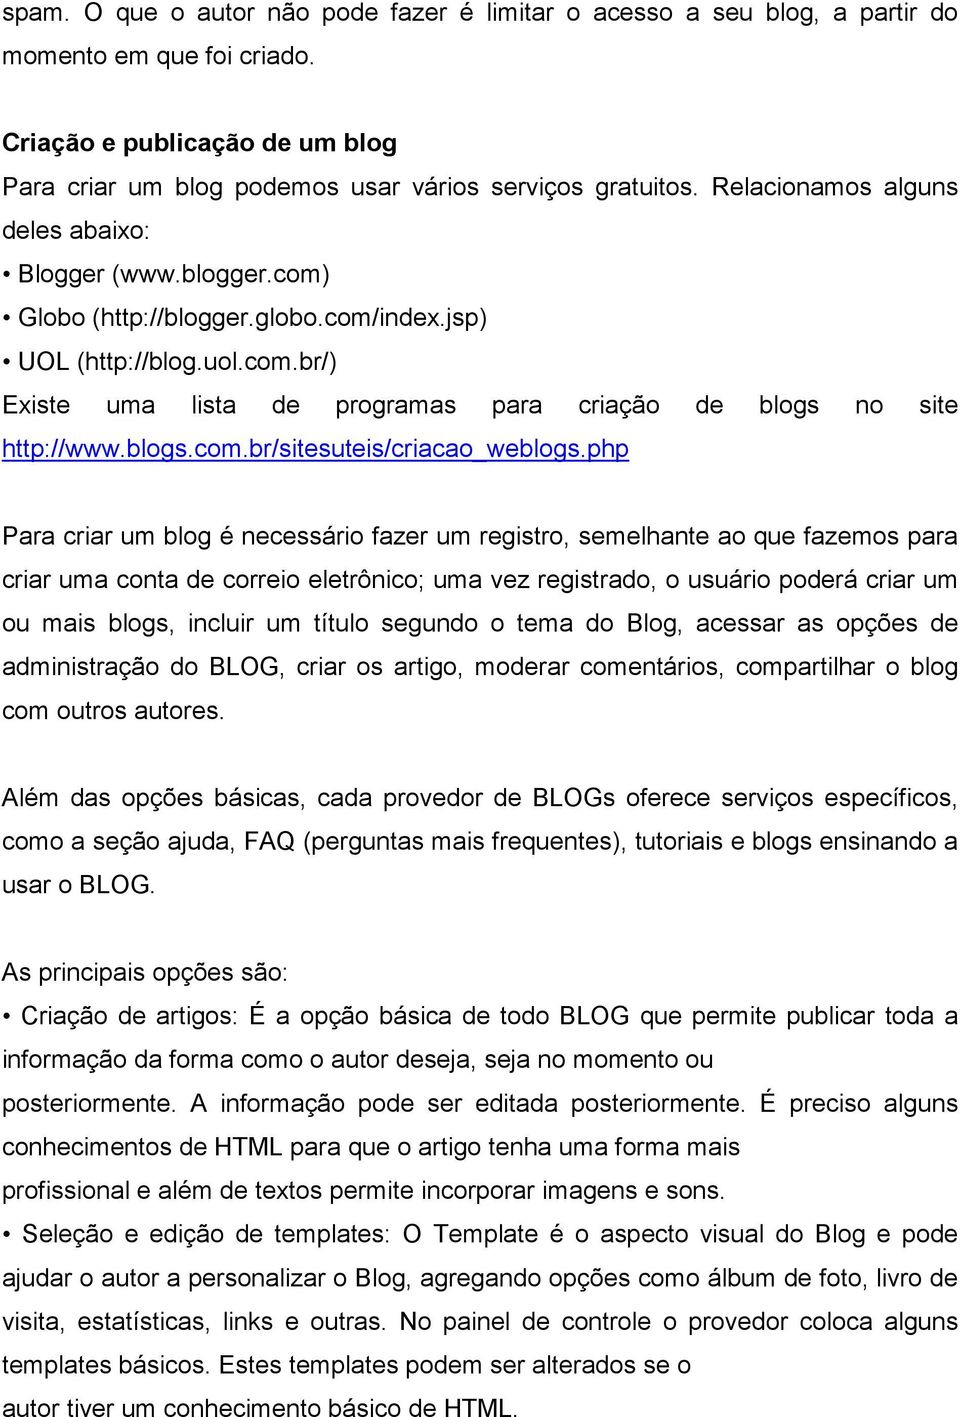 blogs.com.br/sitesuteis/criacao_weblogs.